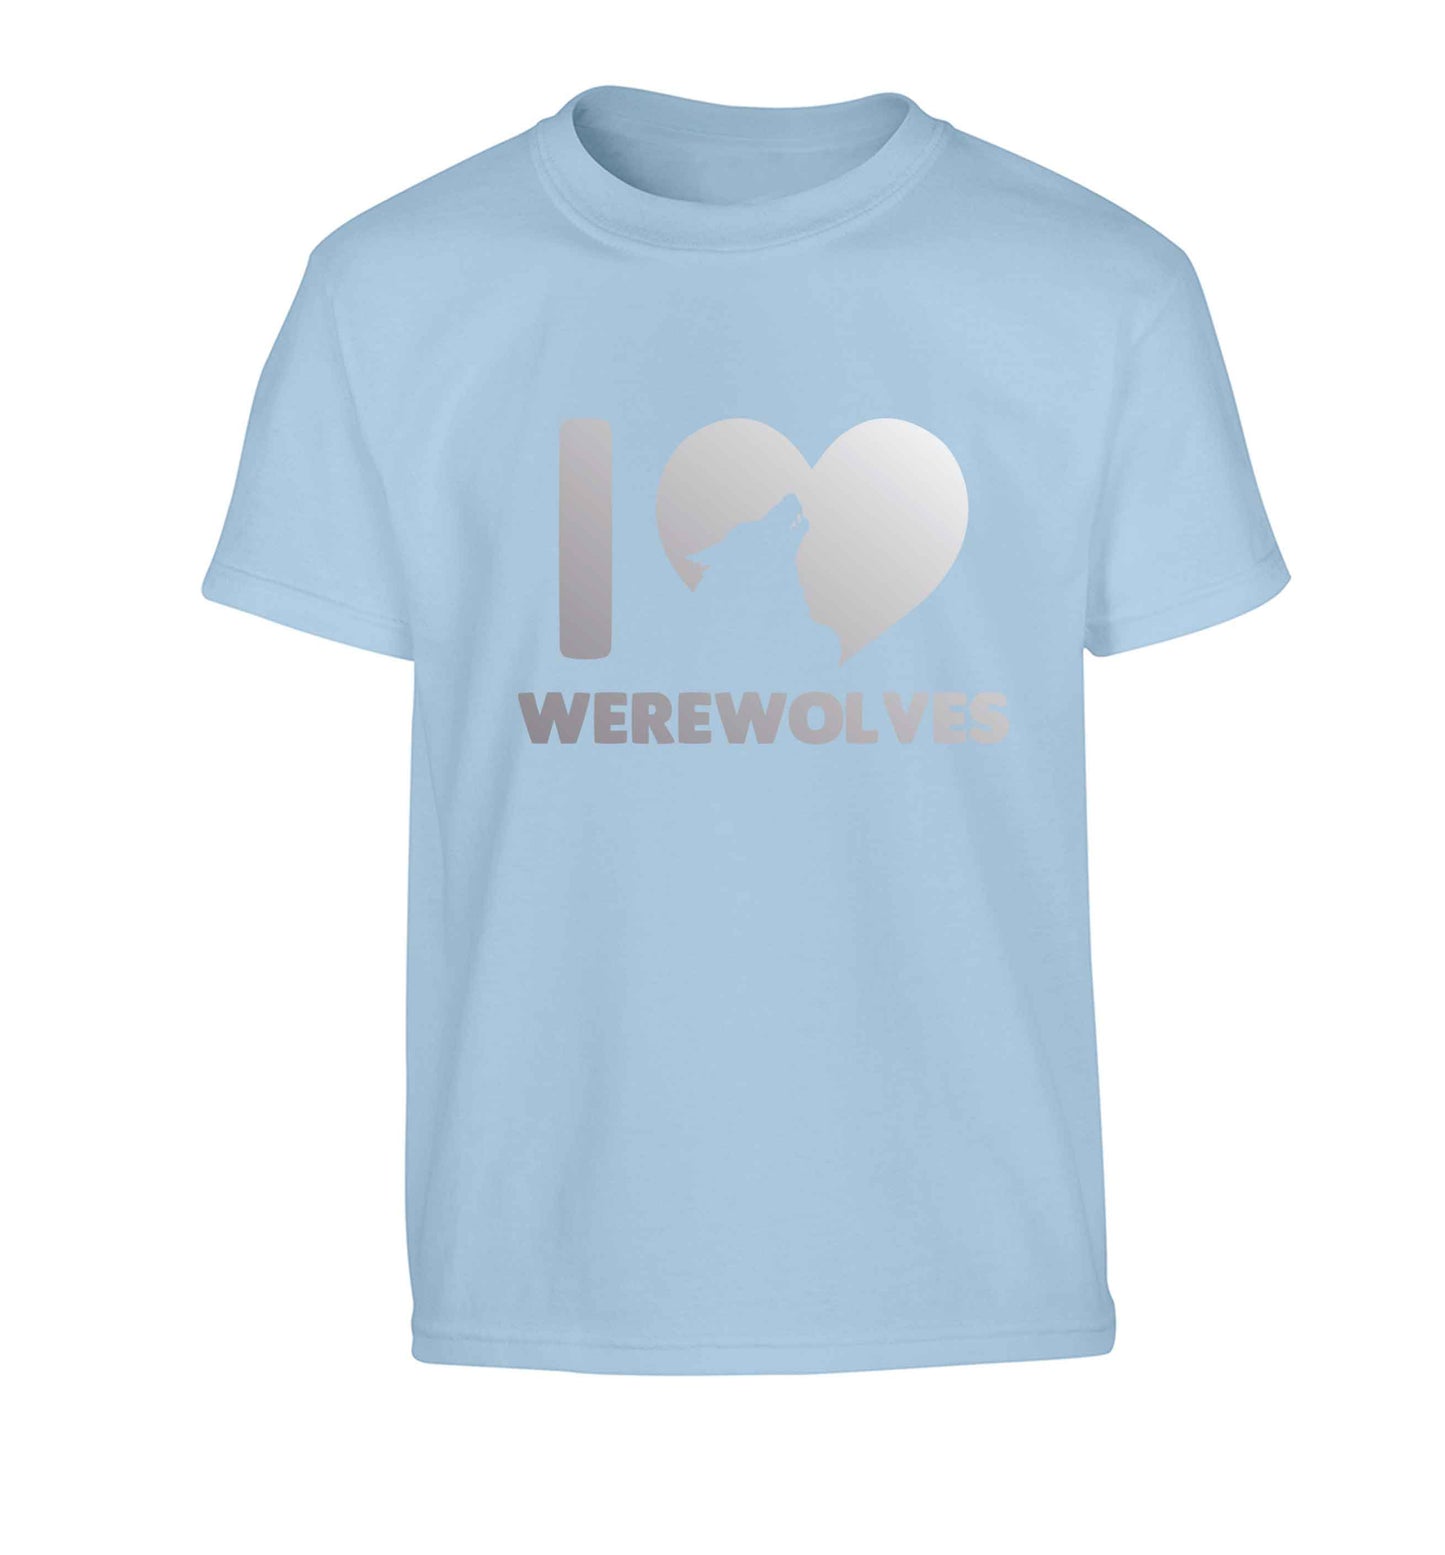 I love werewolves Children's light blue Tshirt 12-13 Years